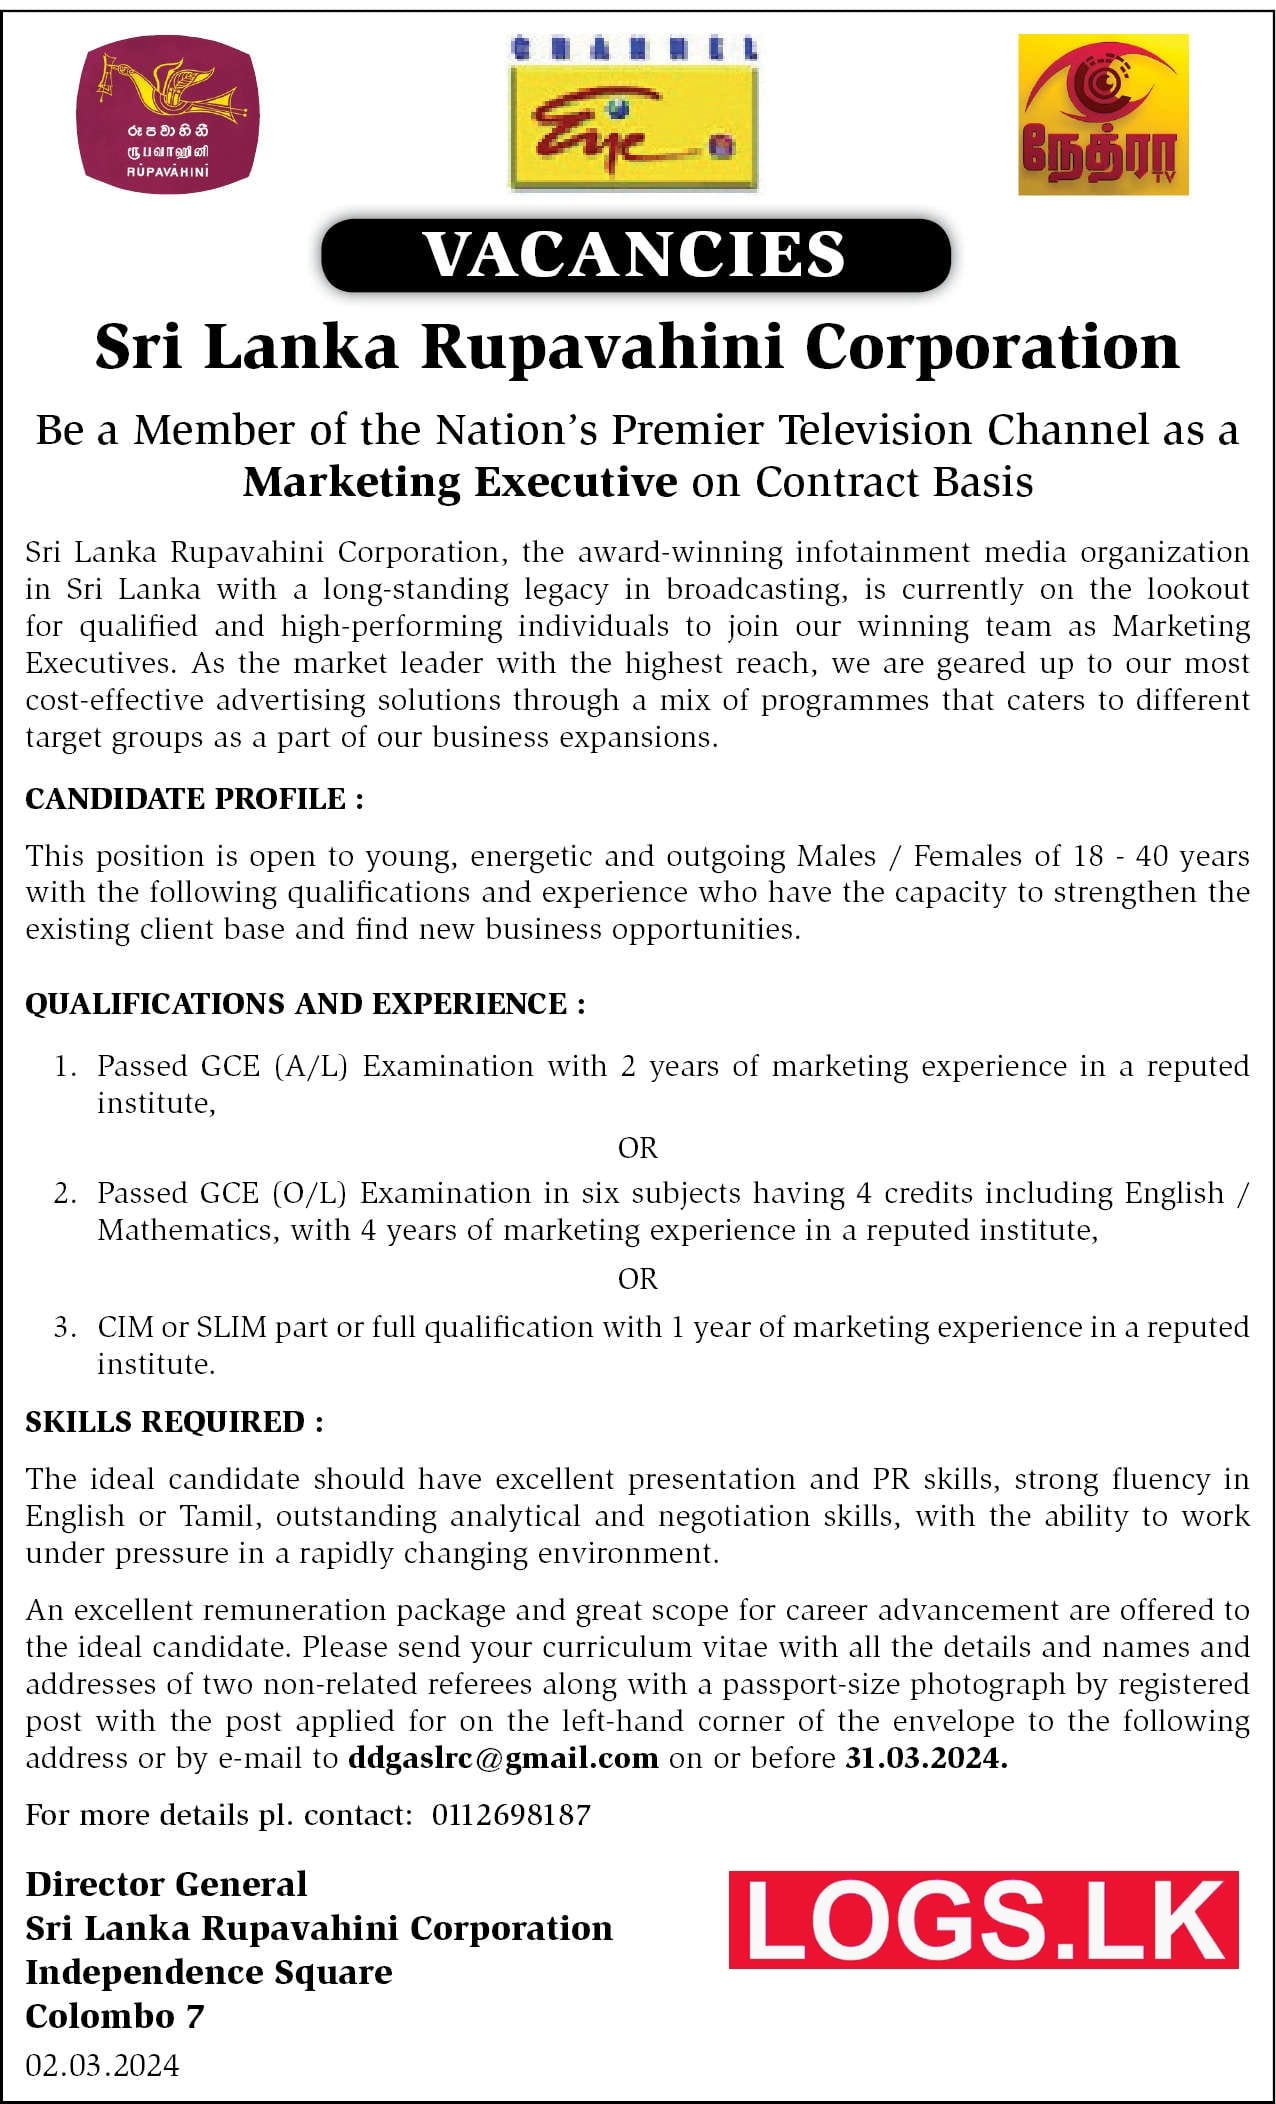 Marketing Executive - Rupavahini Vacancies 2024 Application Form, Details Download